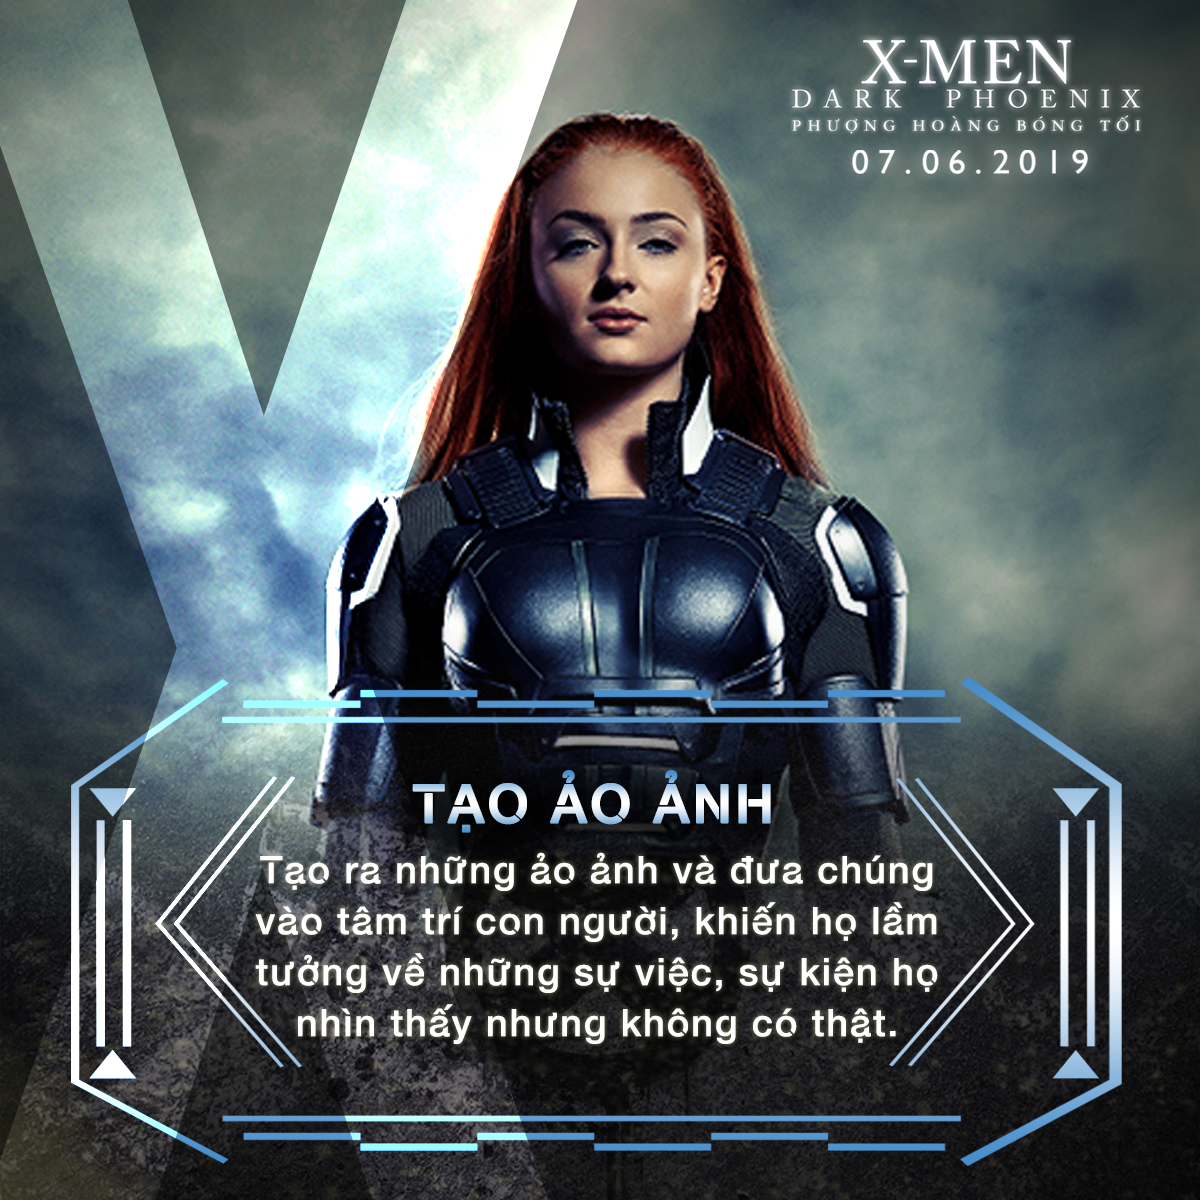 Choáng ngợp với sức mạnh bá đạo của người đẹp Jean Grey trong vũ trụ dị nhân X-Men - Ảnh 4.